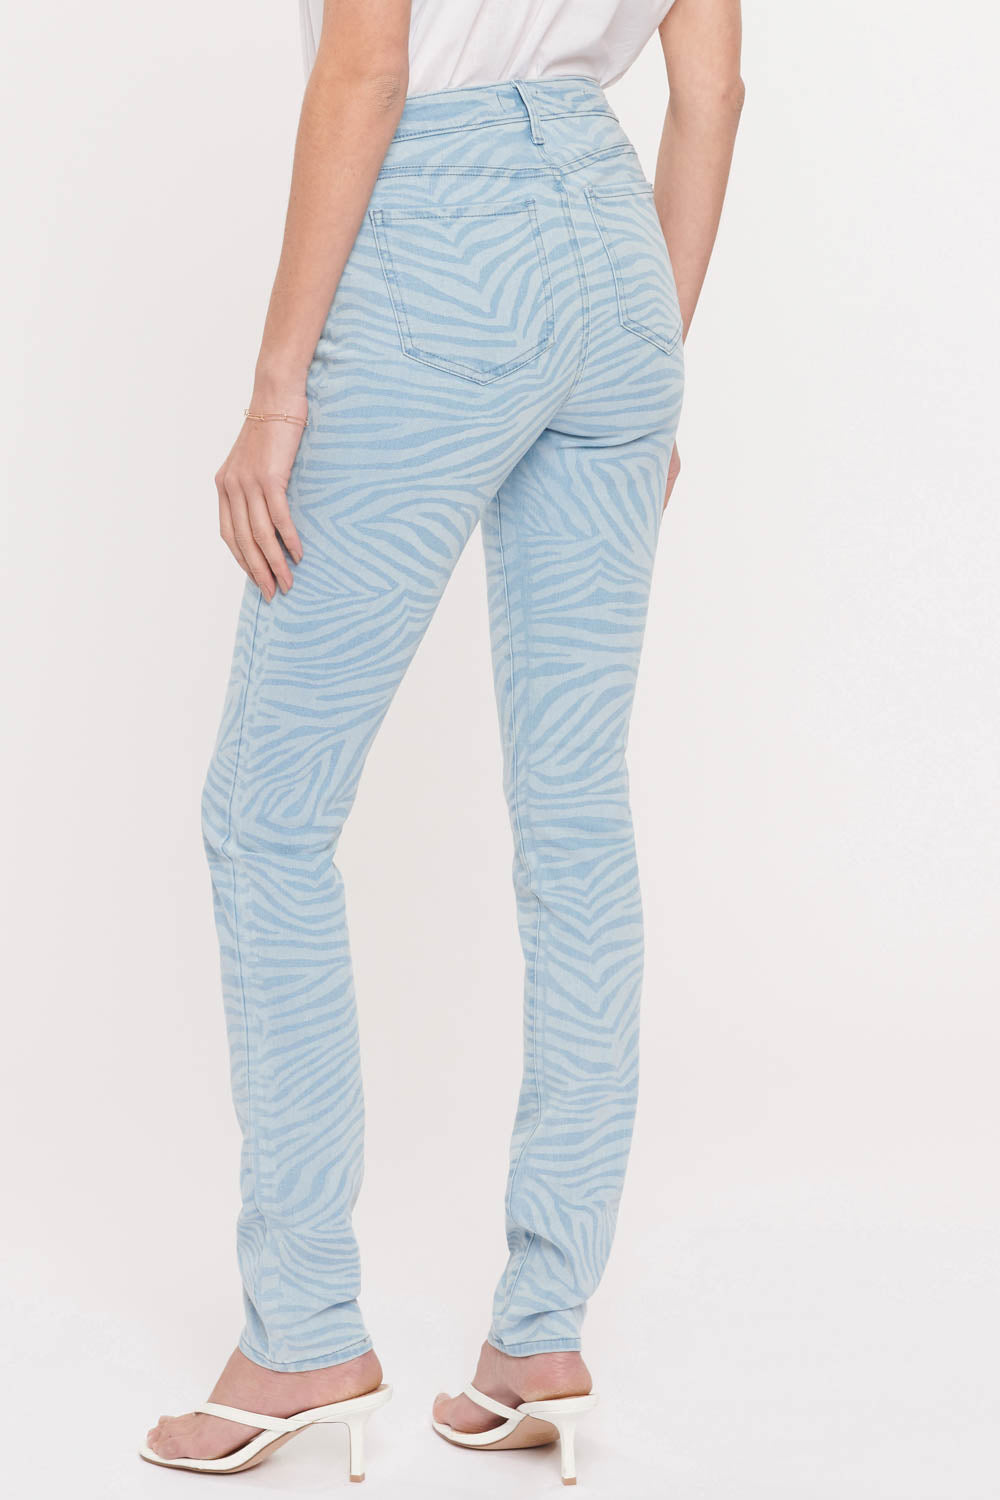 NYDJ Alina Skinny Jeans  - Zen Zebra